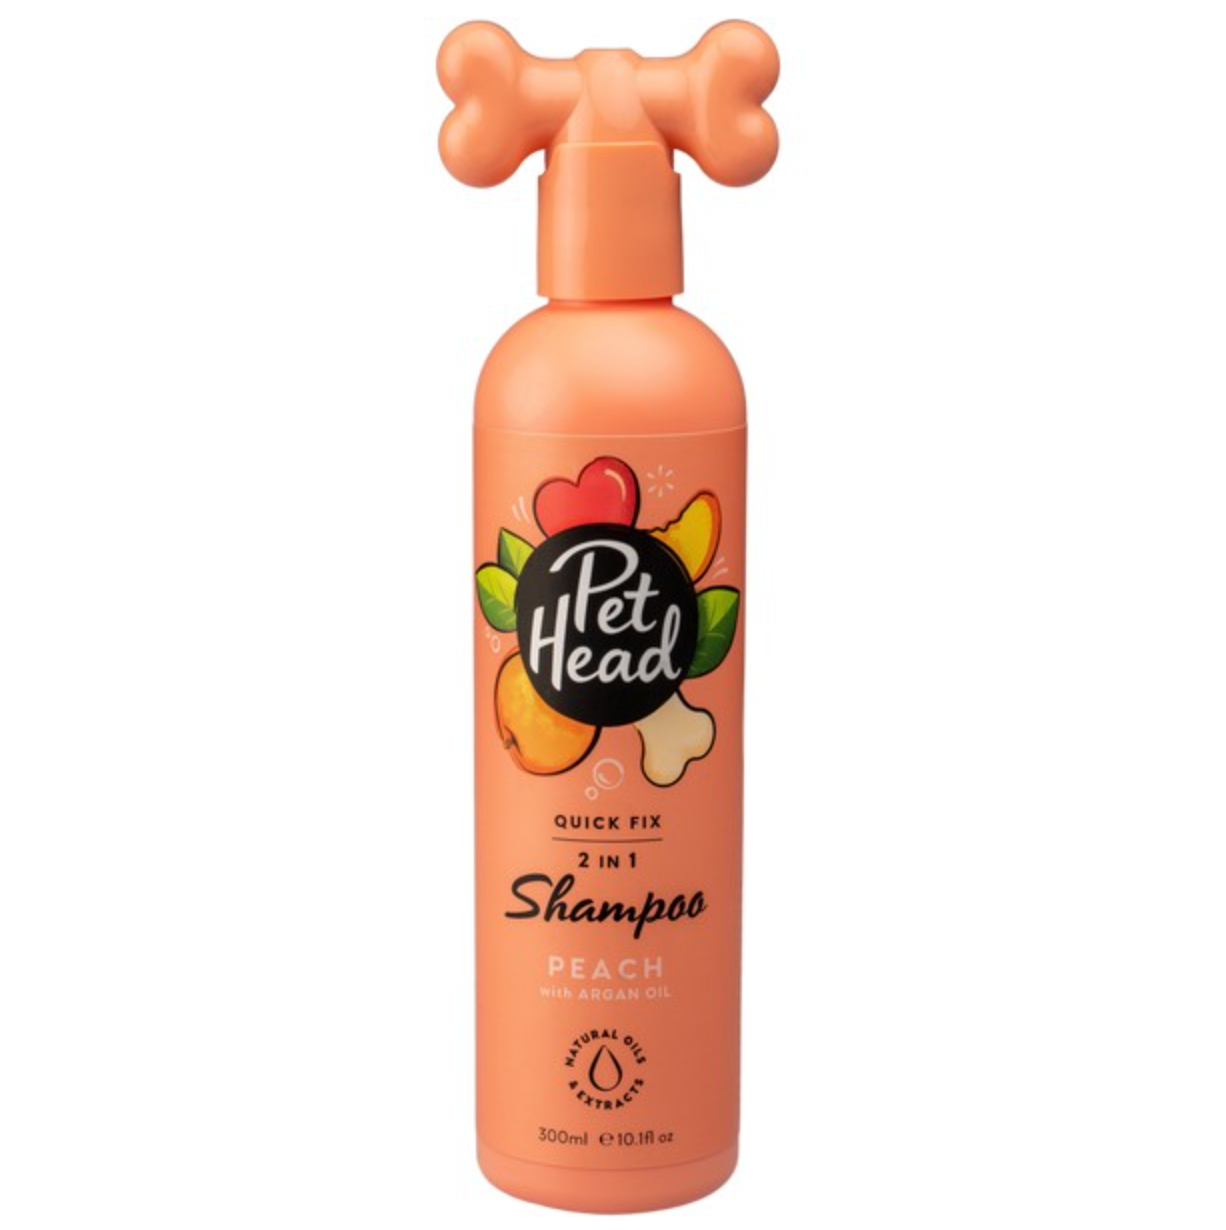 Pet Head Quick Fix 2 in 1 Shampoo & Conditioner Peach (300ml)